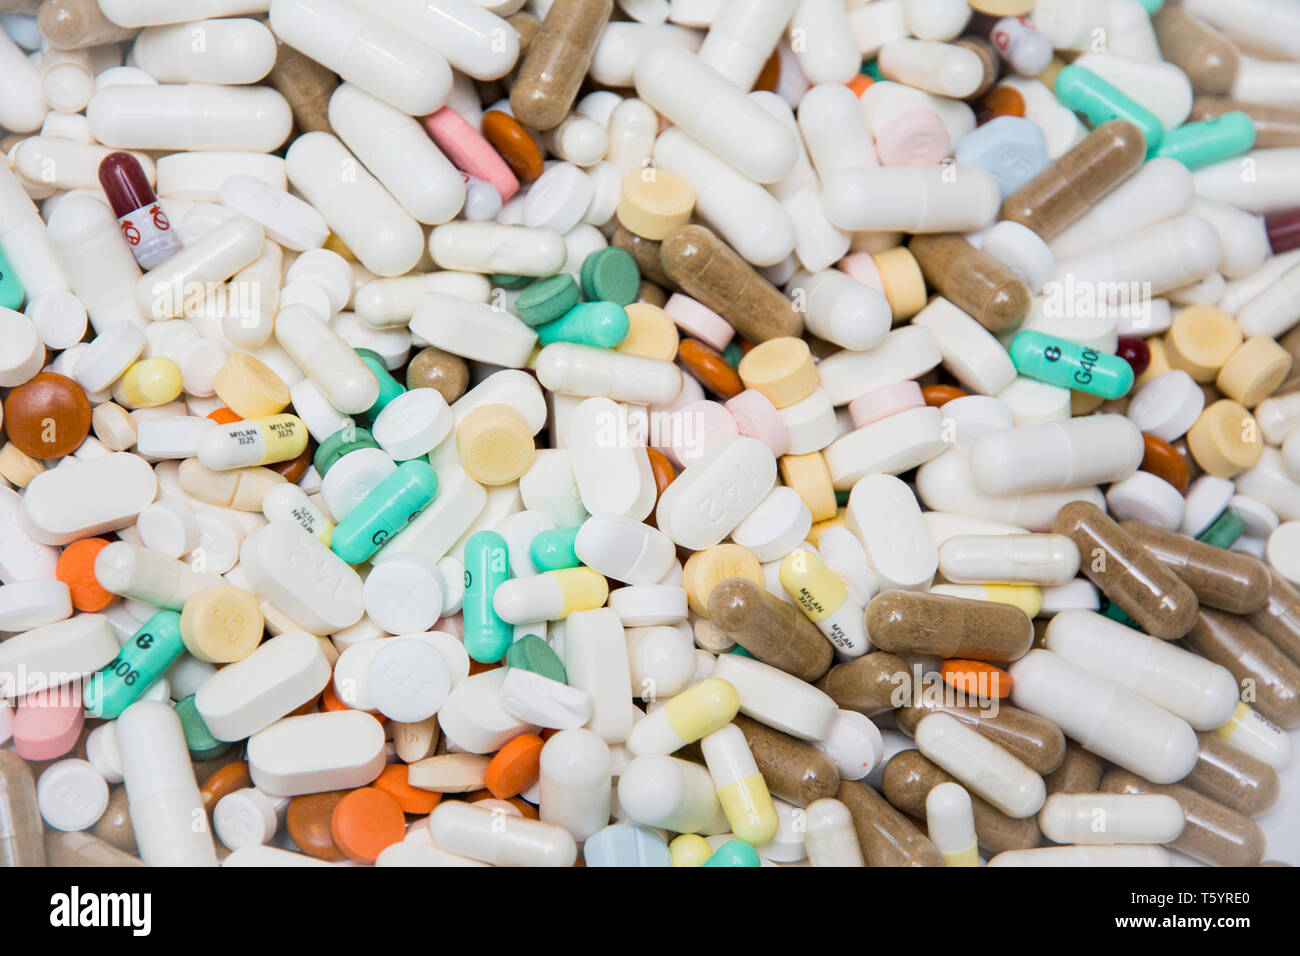 Eine große Anzahl von Drogen - Medikamente in Pillen, Kapseln und Tabletten Stockfoto